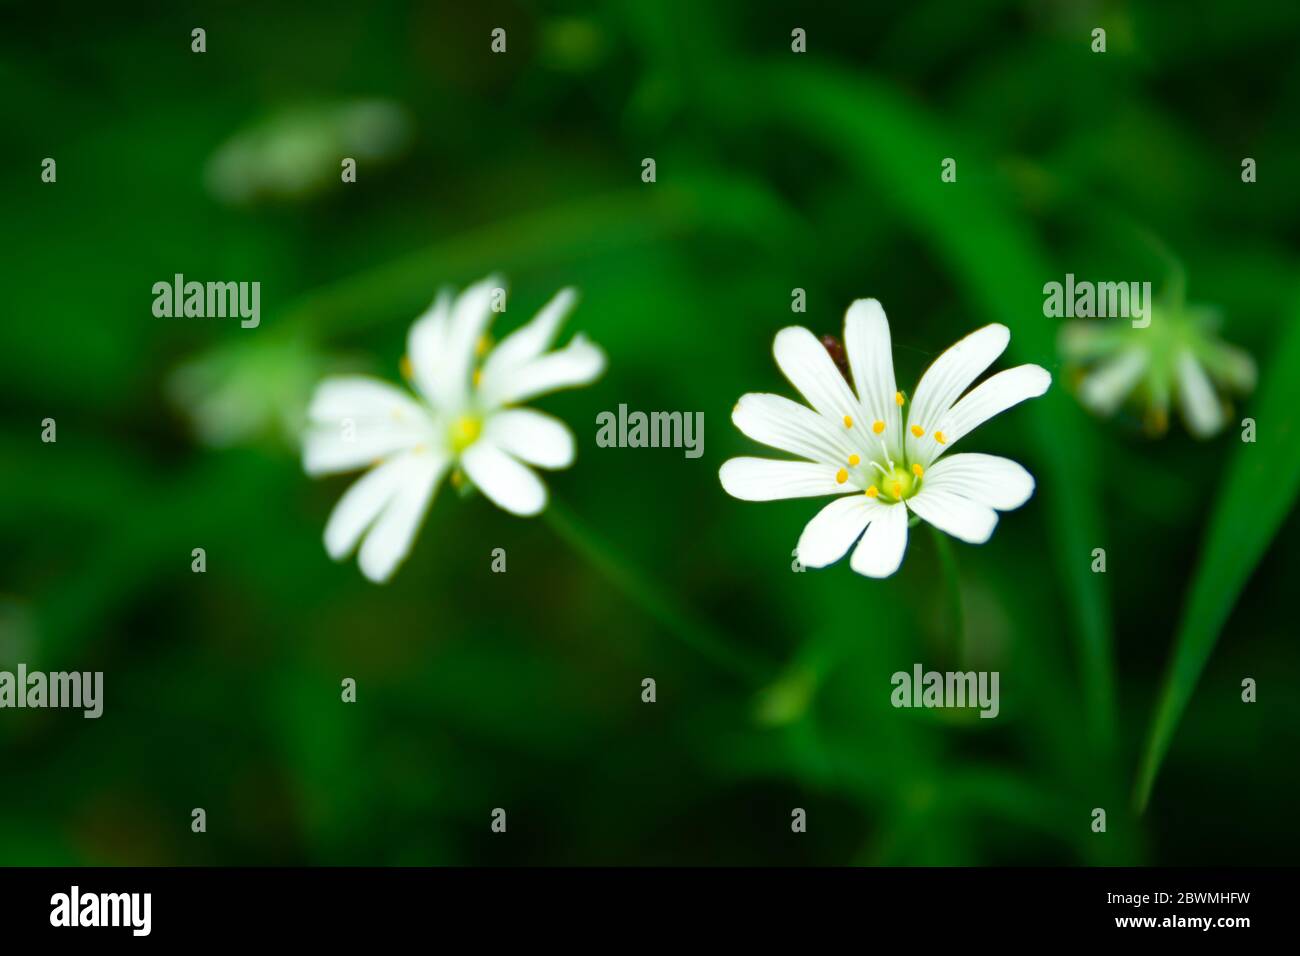 Fleurs de champs blancs de mauvaises herbes chiches en gros plan, fond vert, vue de printemps Banque D'Images